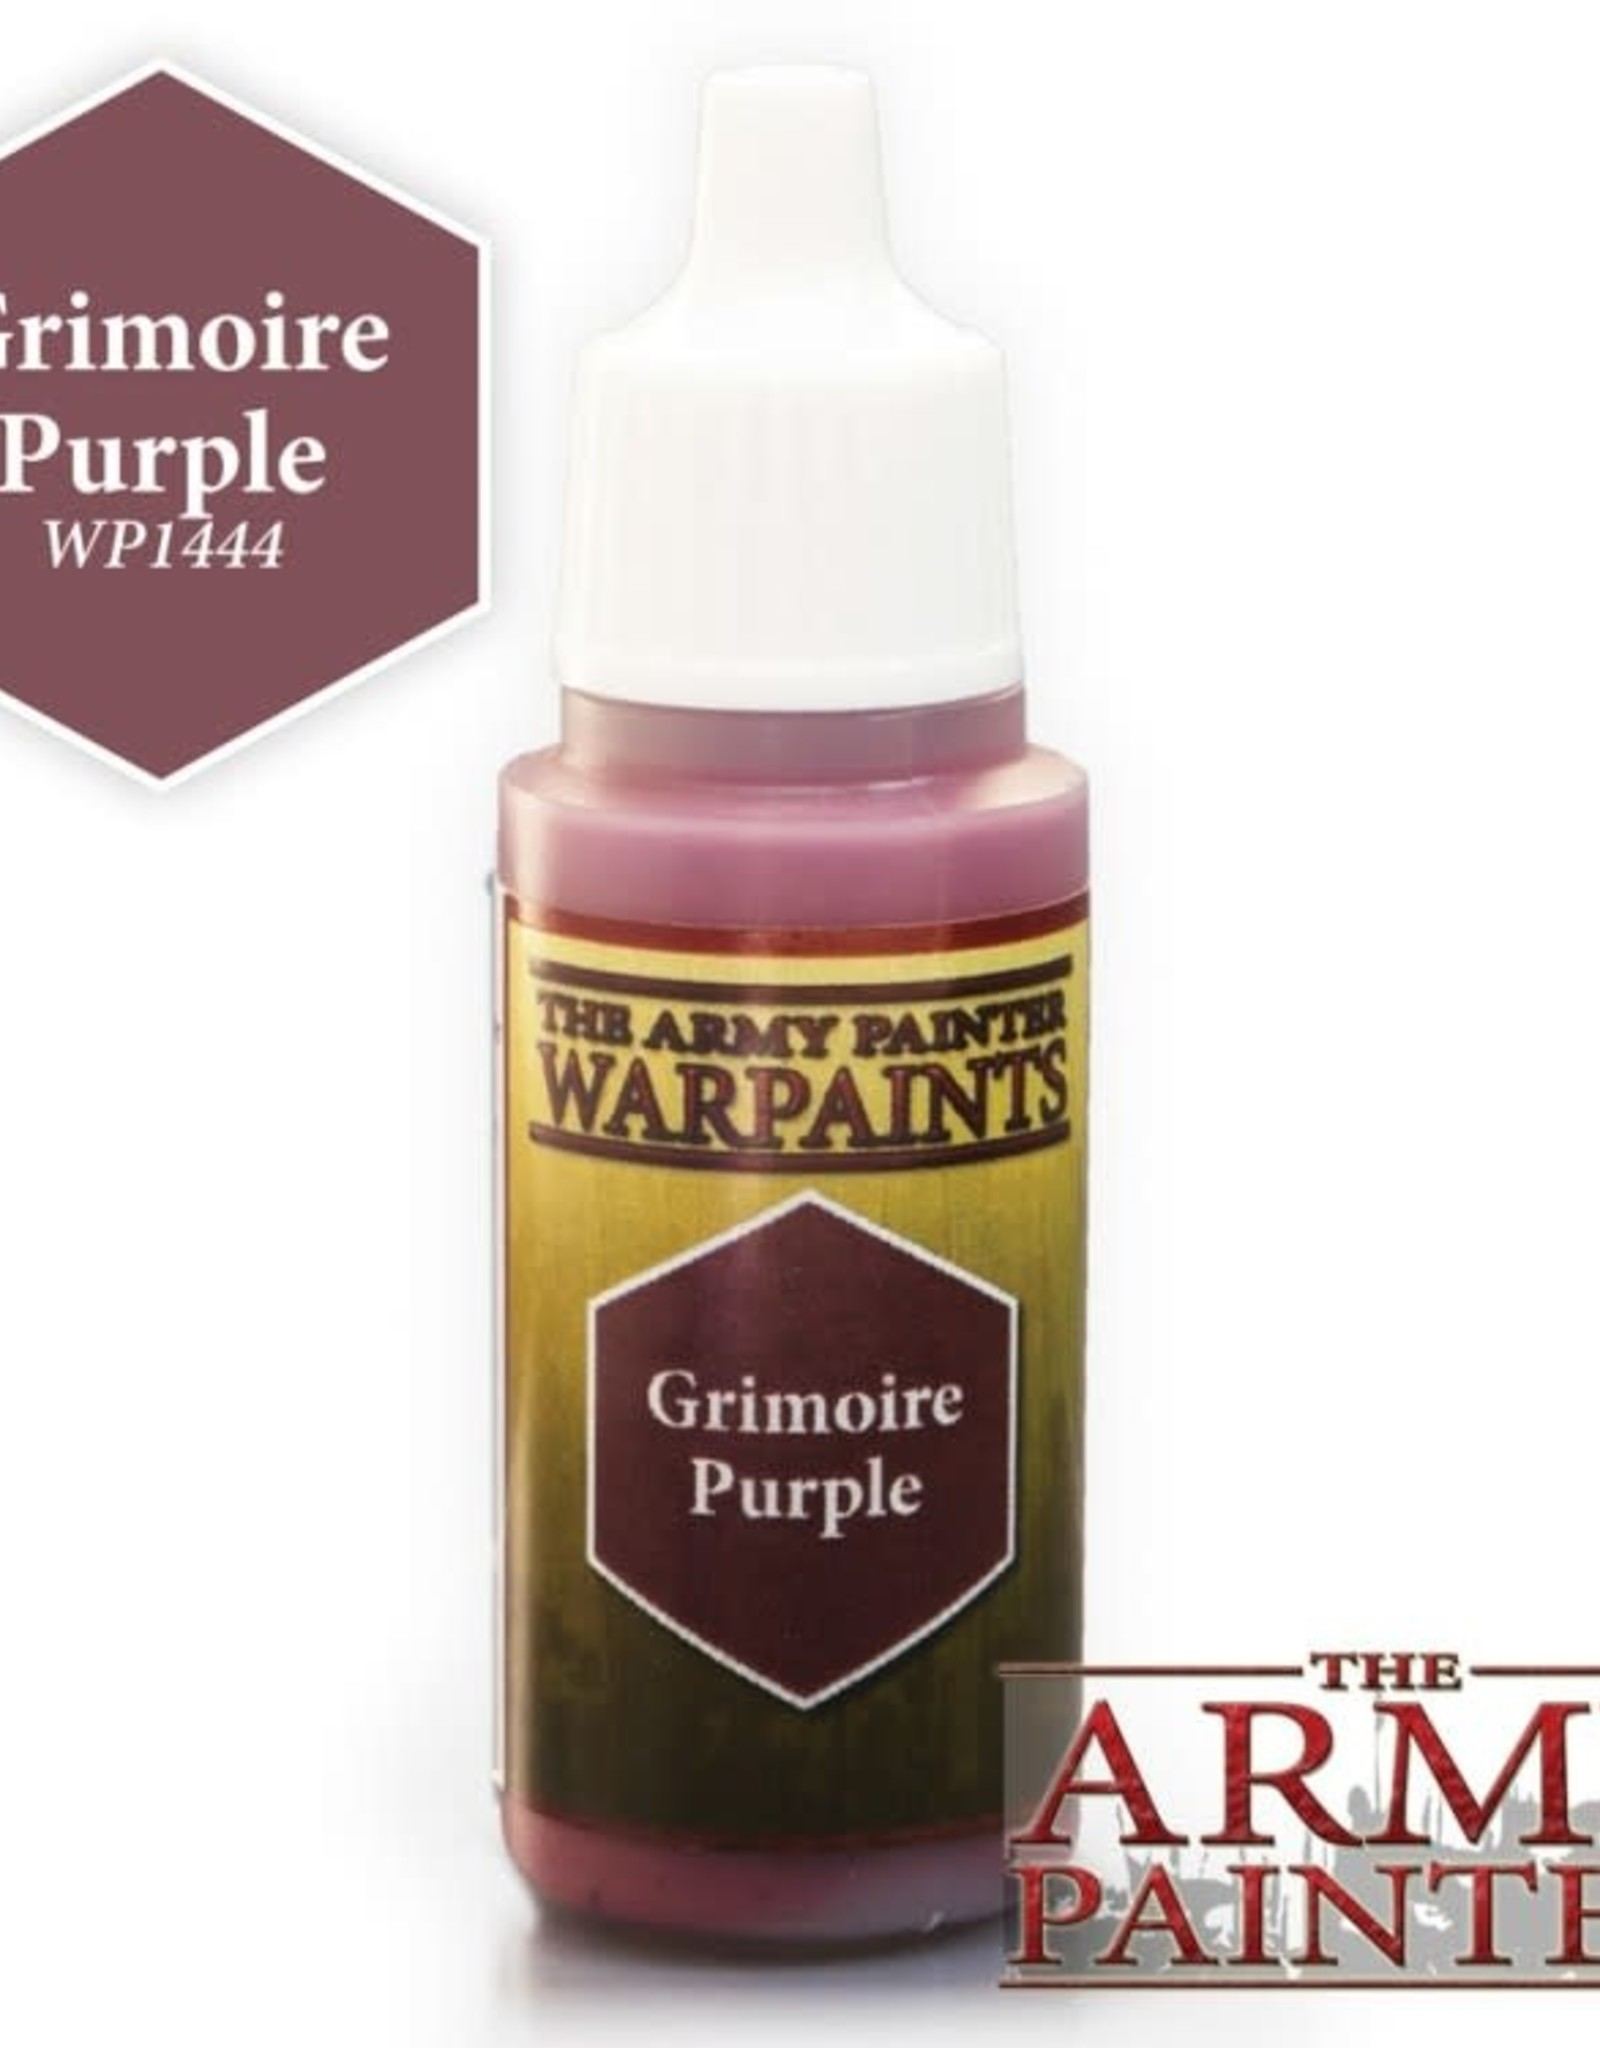 The Army Painter Warpaints - Grimoire Purple